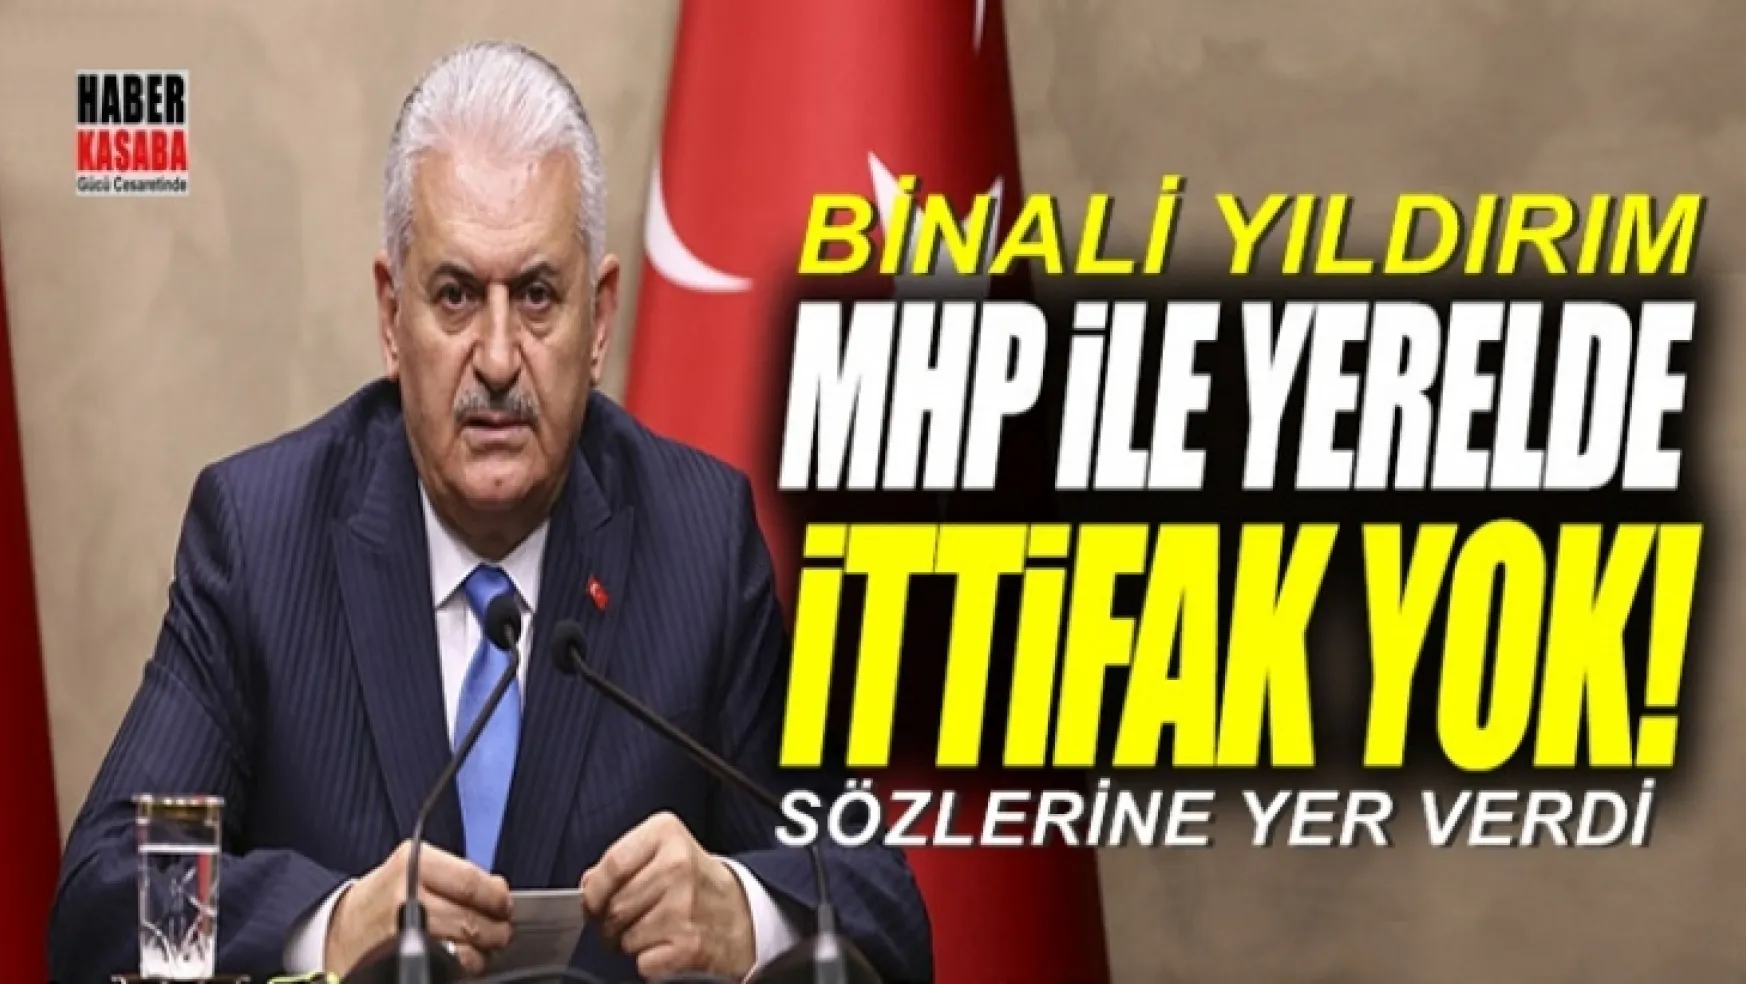 Başbakan Yıldırım MHP ile yerelde ittifak yok!